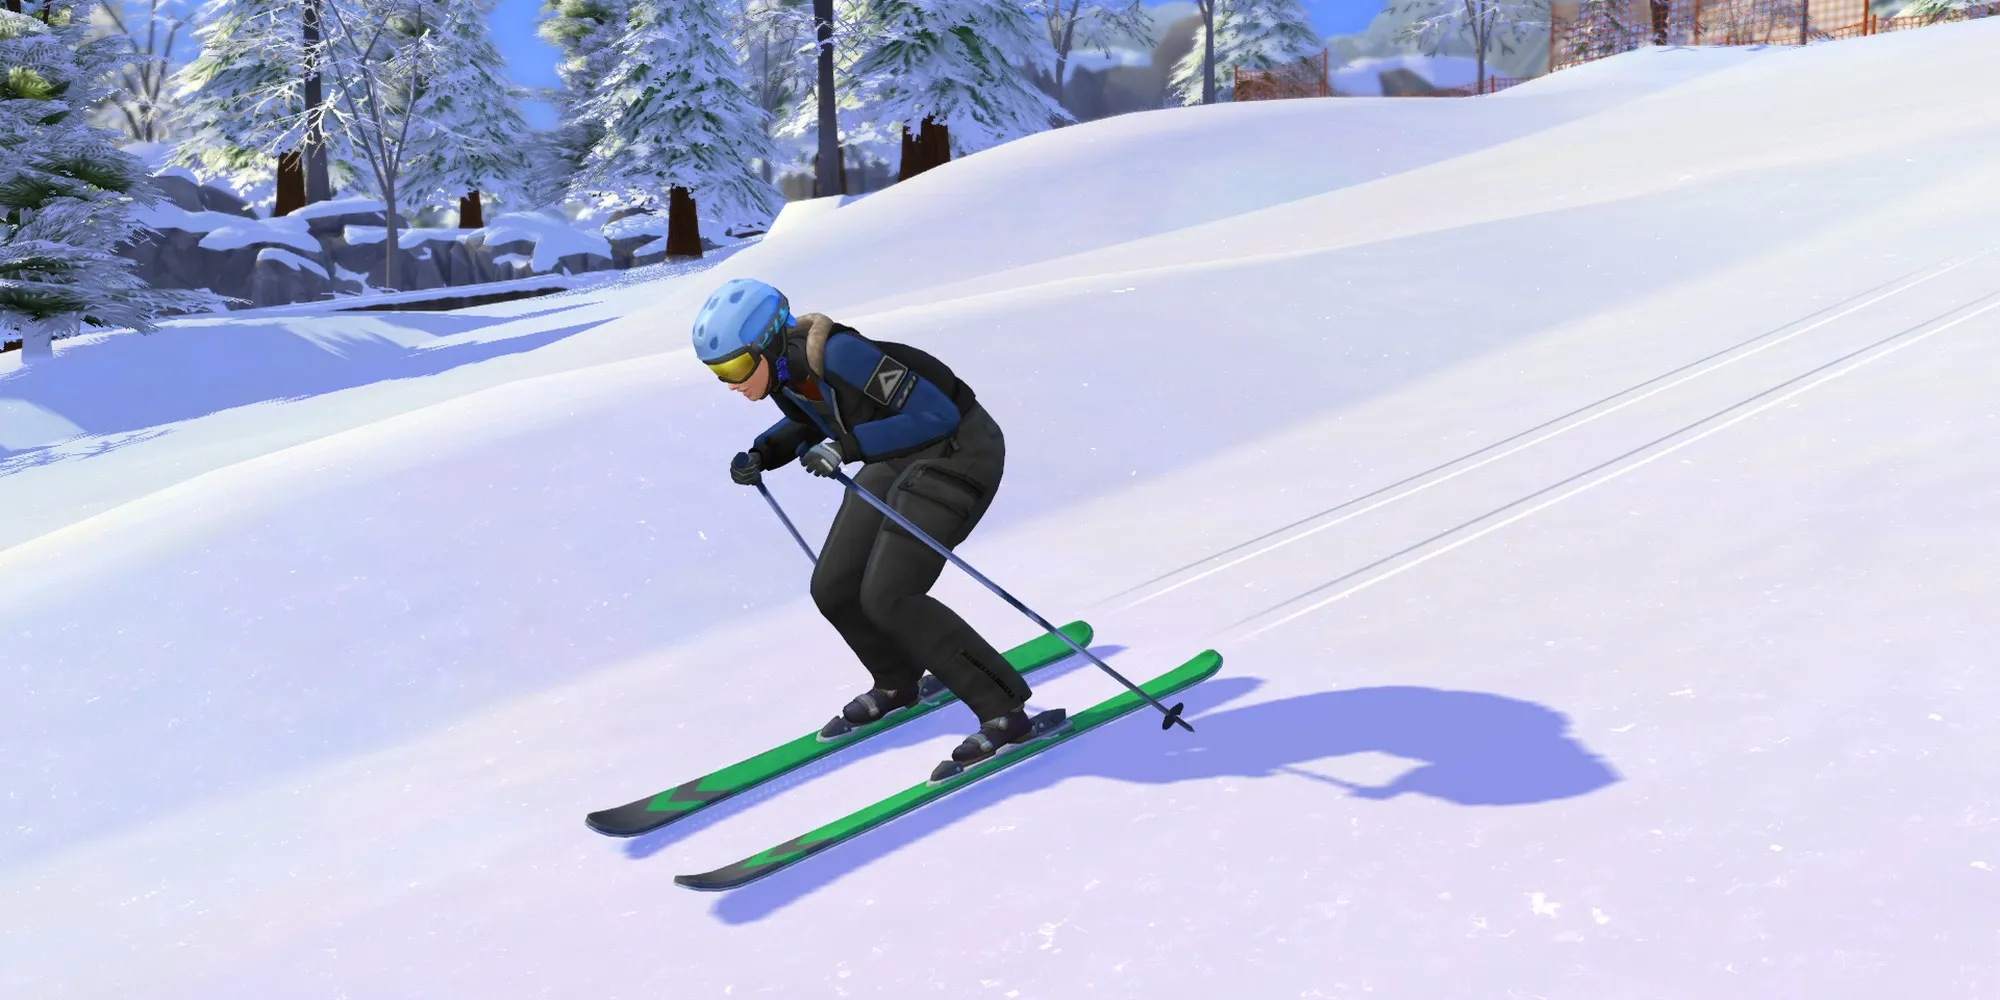 сим катается на лыжах в горах Мт. Комореби навык лыжного спорта в The Sims 4: Снежный отдых